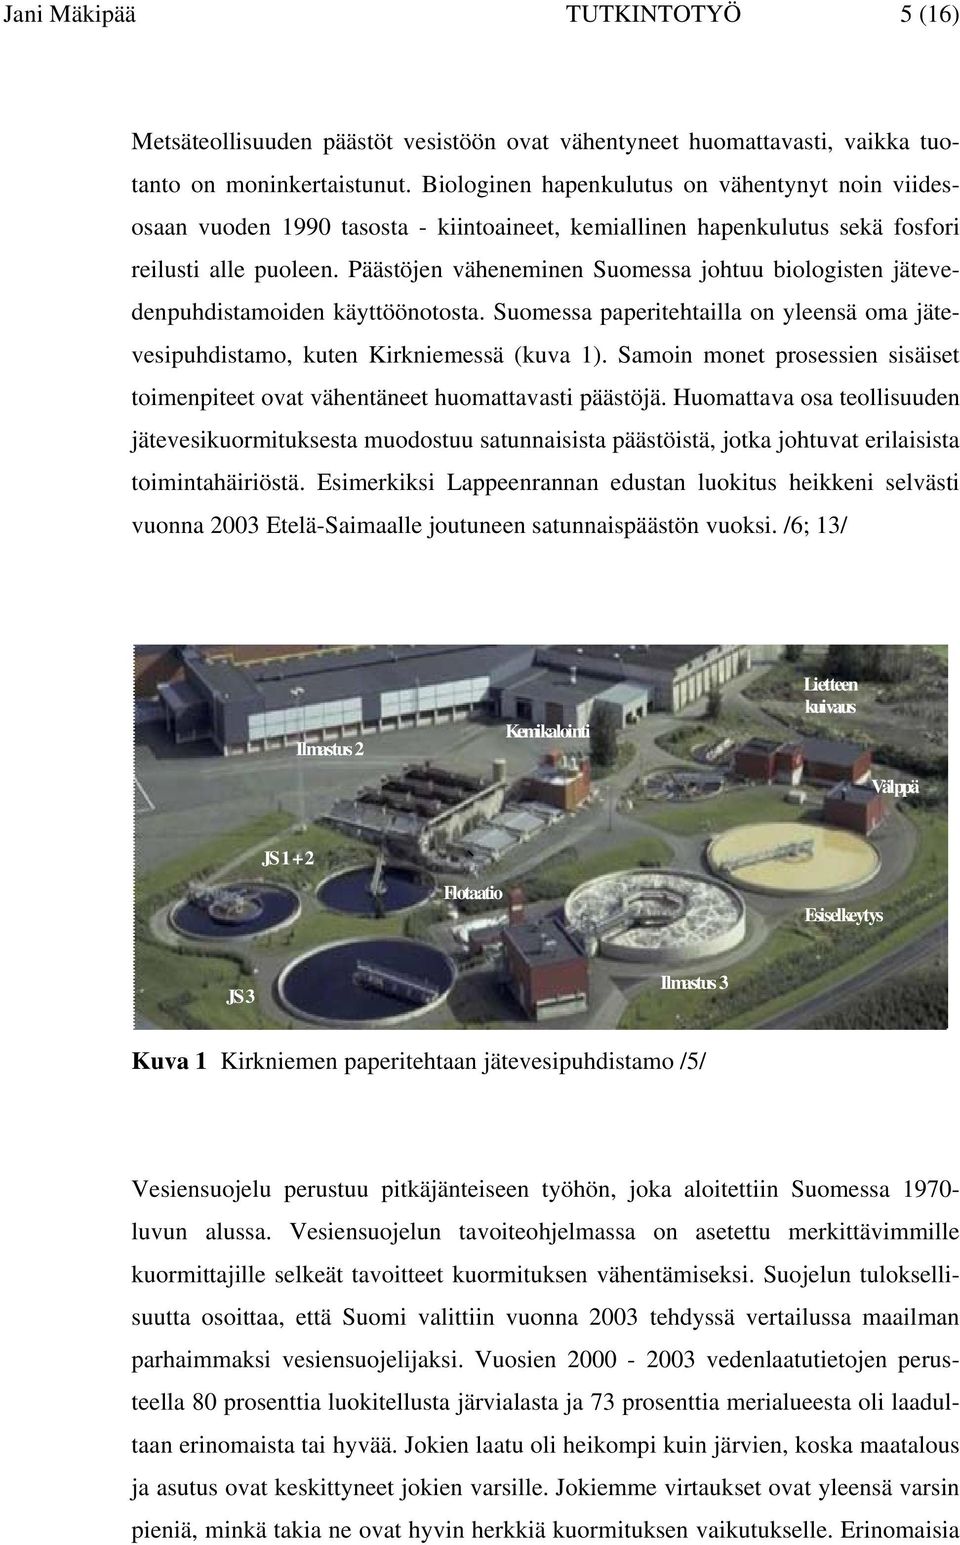 Päästöjen väheneminen Suomessa johtuu biologisten jätevedenpuhdistamoiden käyttöönotosta. Suomessa paperitehtailla on yleensä oma jätevesipuhdistamo, kuten Kirkniemessä (kuva 1).